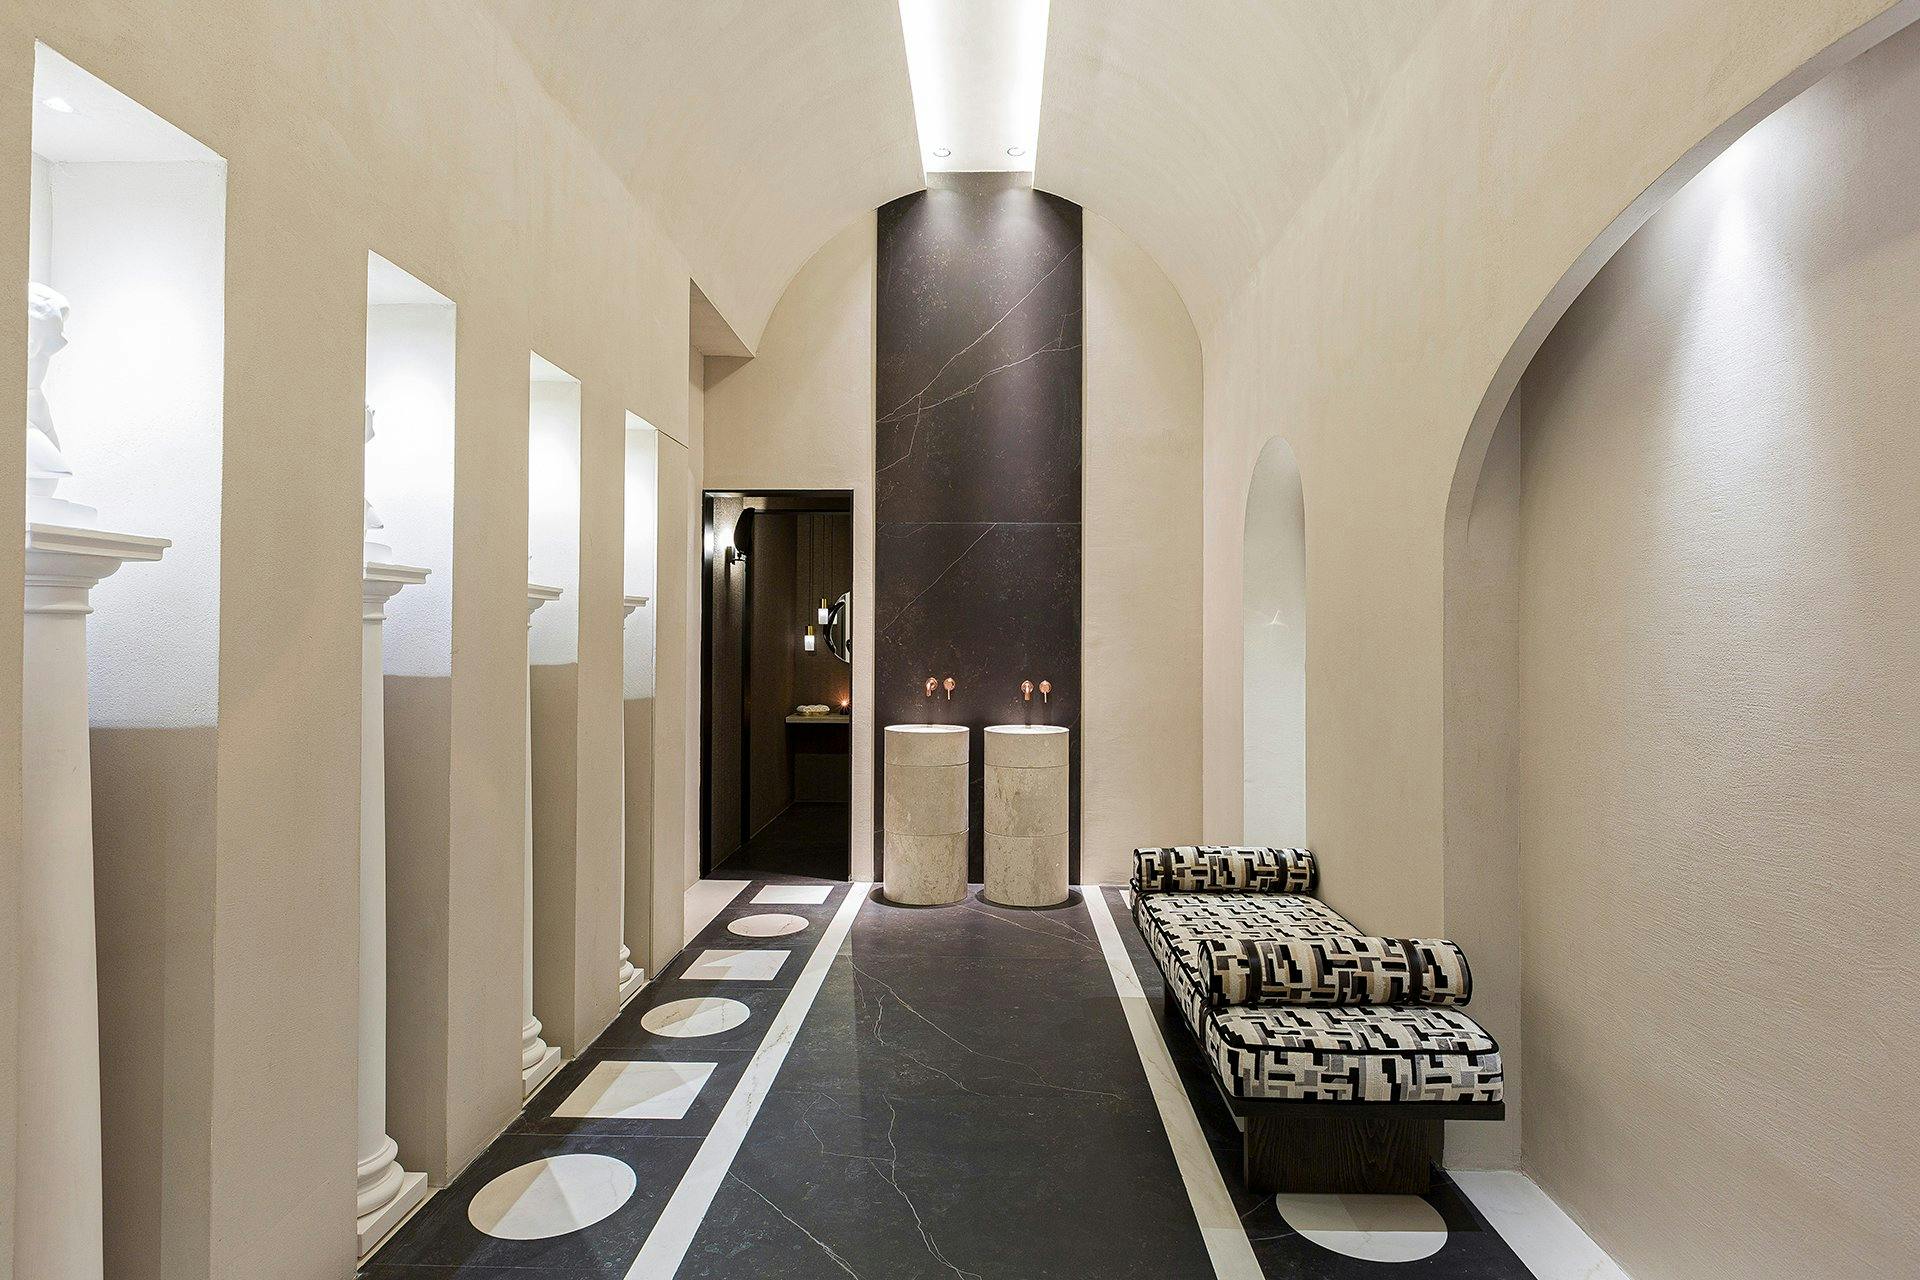 Cordero Vuelo cualquier cosa Un baño público contemporáneo inspirado en las termas romanas - Cosentino  España